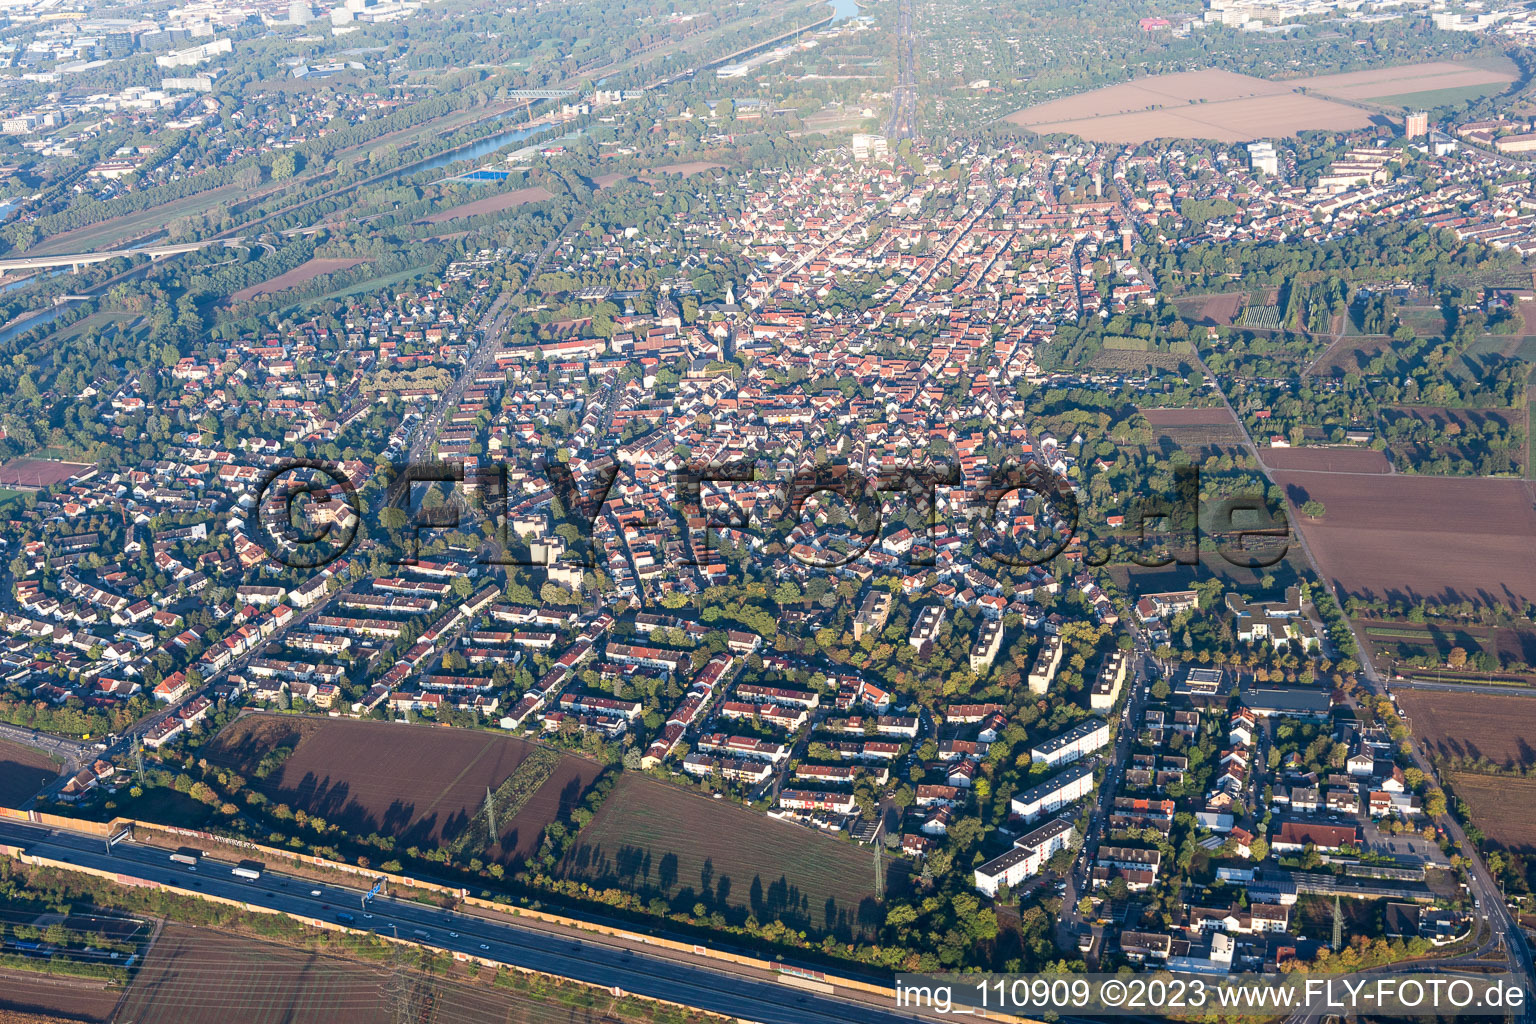 Luftbild von Ortsteil Feudenheim in Mannheim im Bundesland Baden-Württemberg, Deutschland